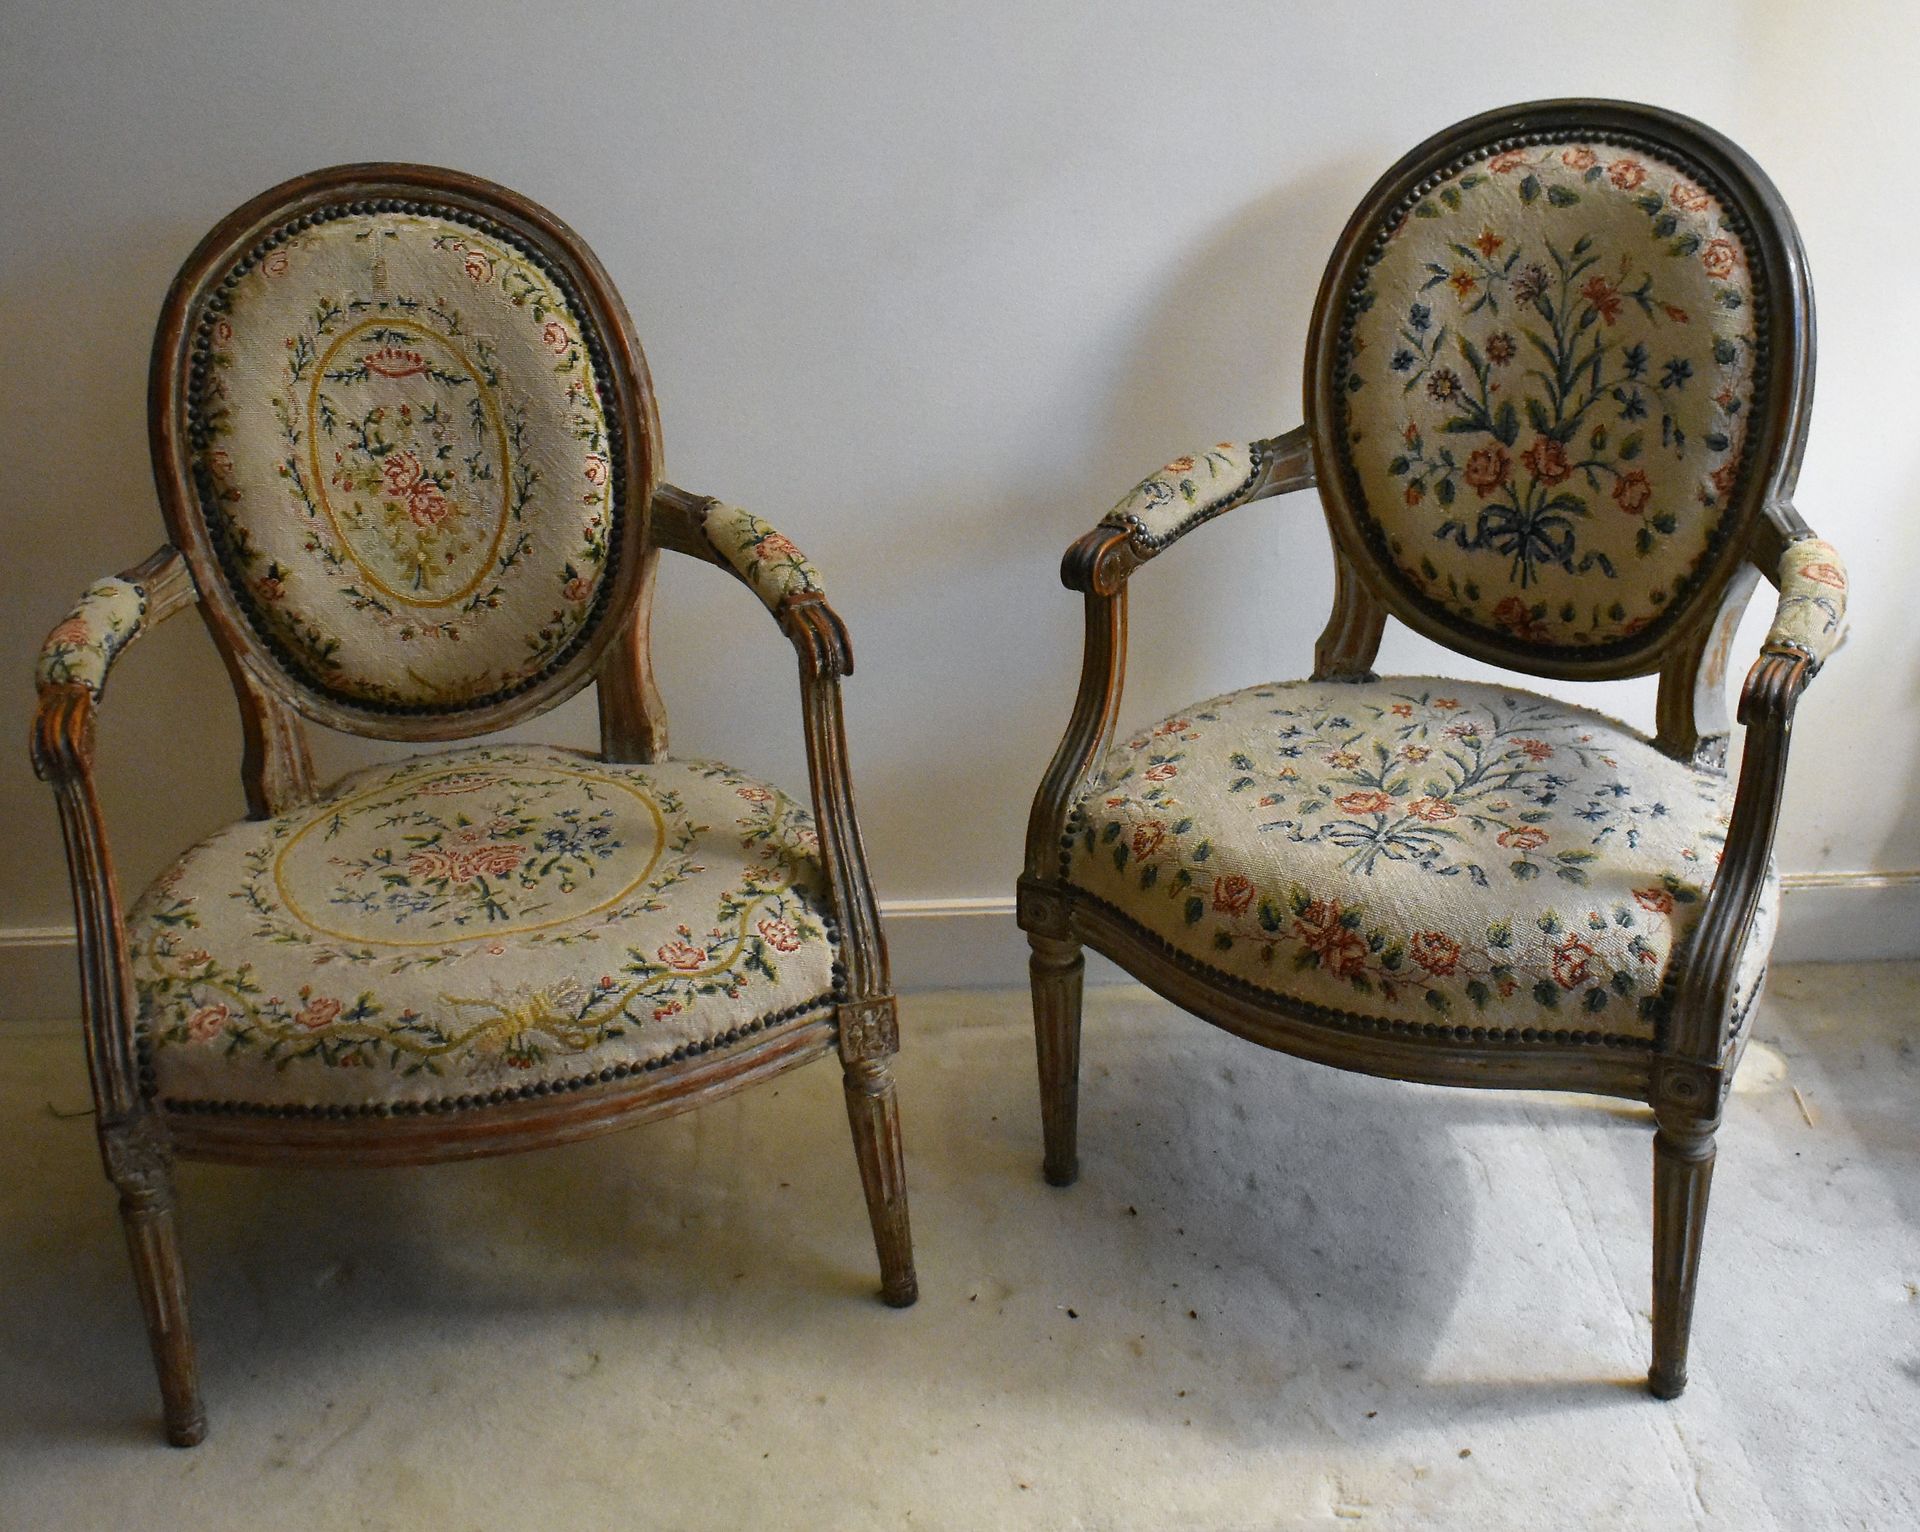 Null 两把白色漆面木质奖章扶手椅。路易十六风格，19世纪末。小点装潢。